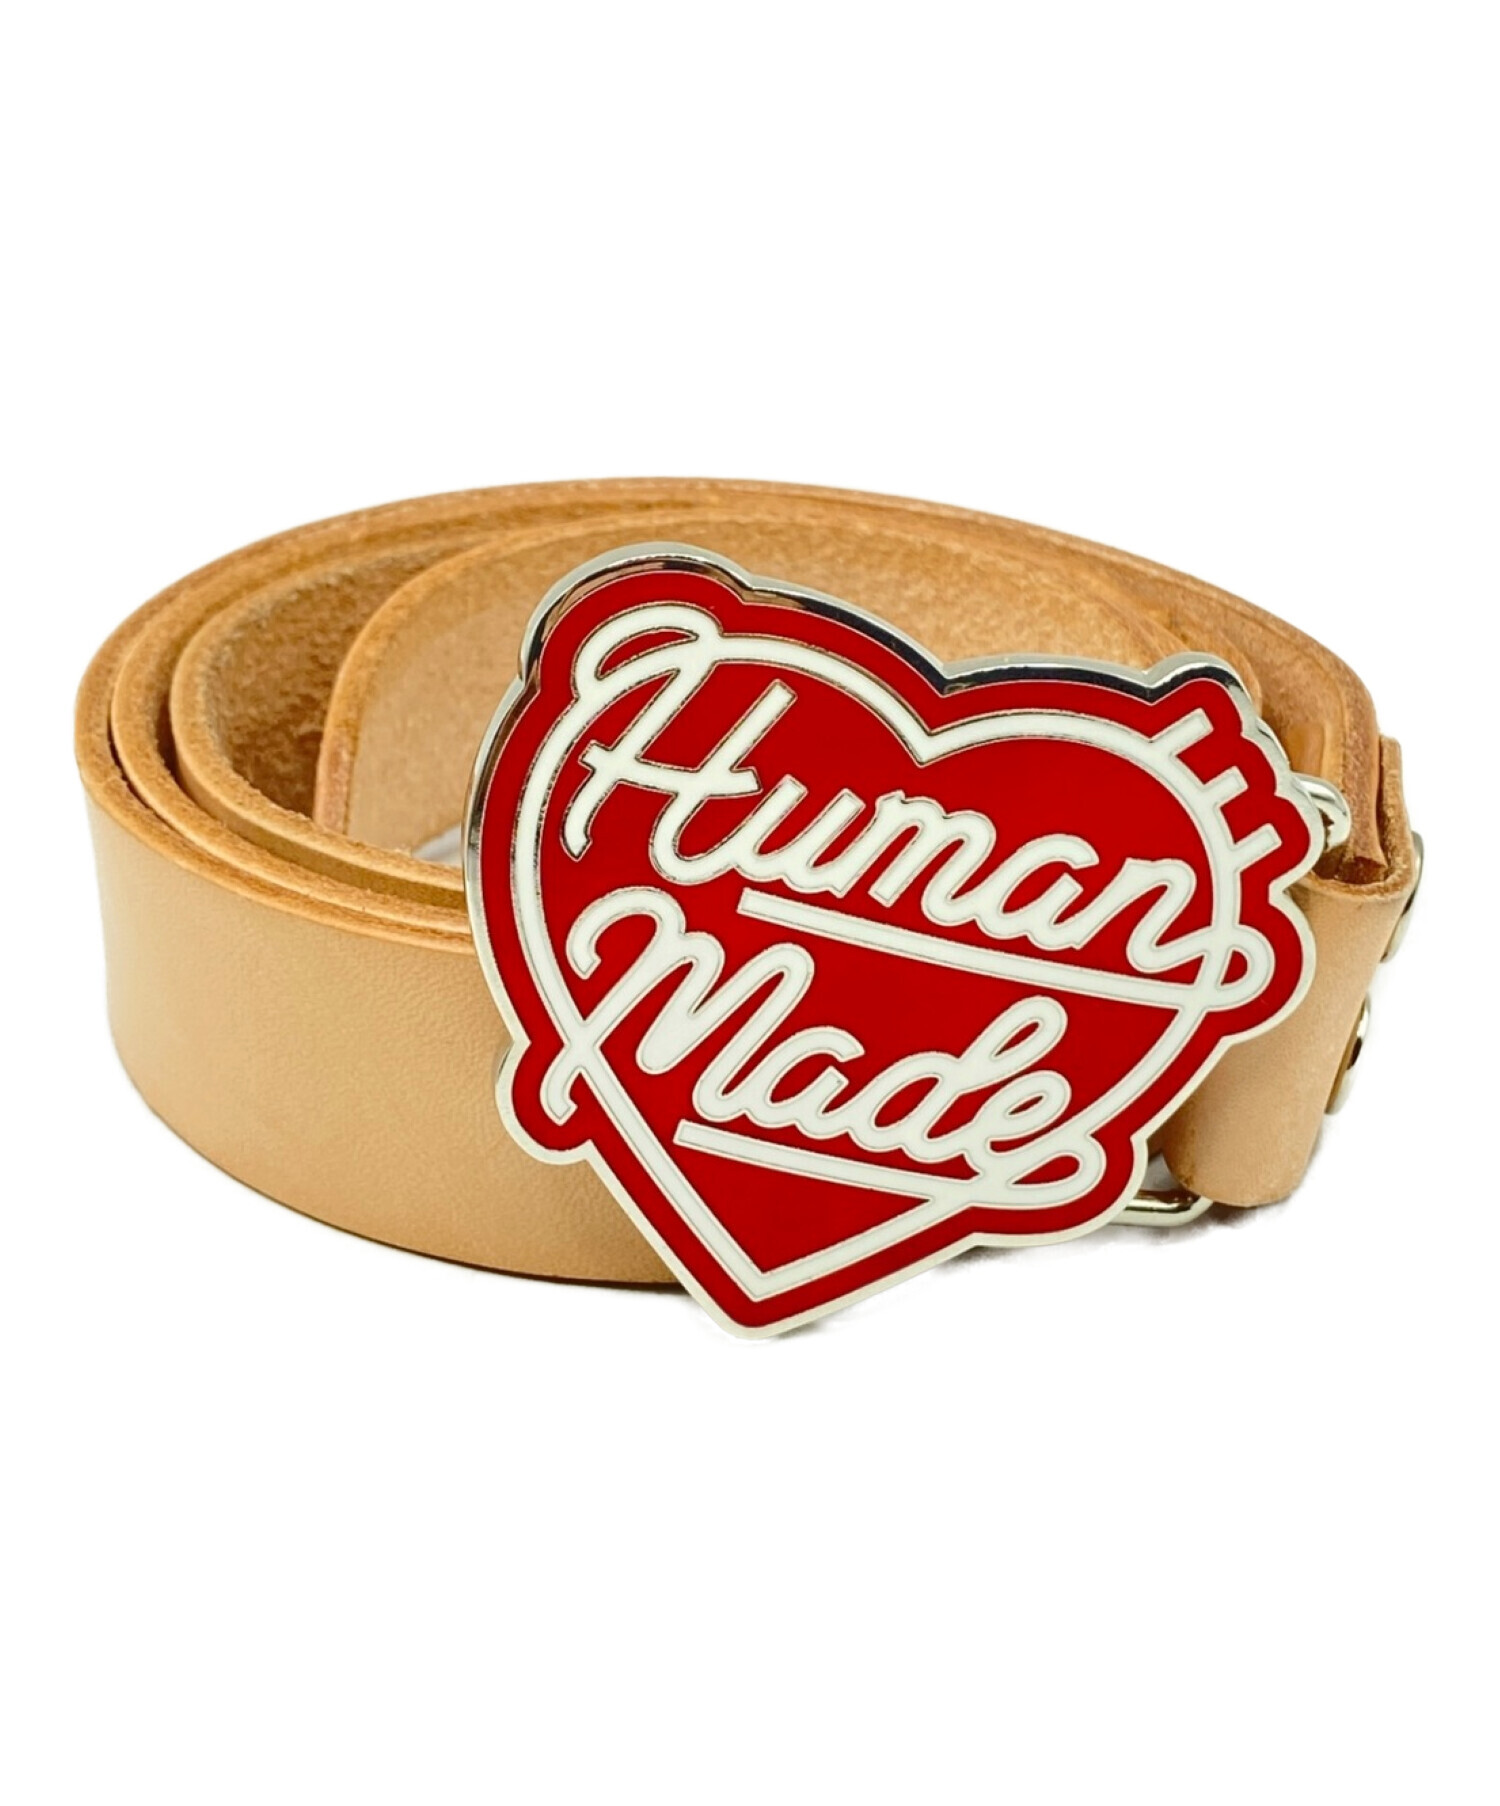 ヒューマンメイド Human made heart leather belt-